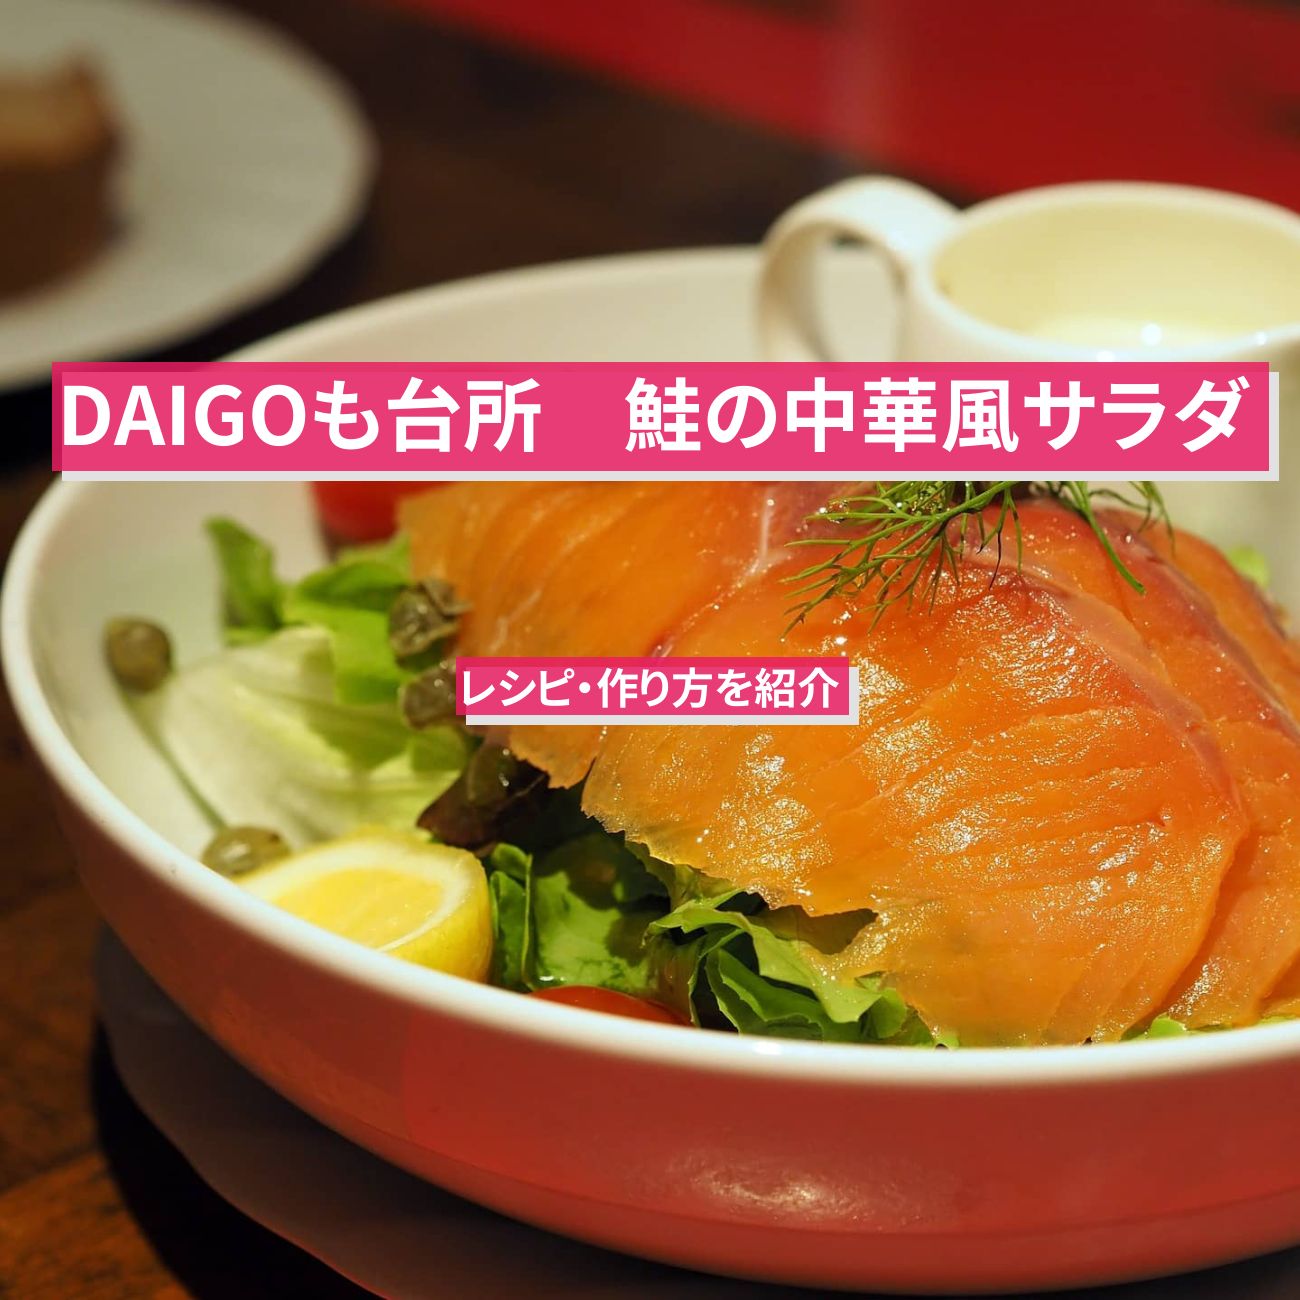 【DAIGOも台所】『鮭の中華風サラダ』のレシピ・作り方を紹介